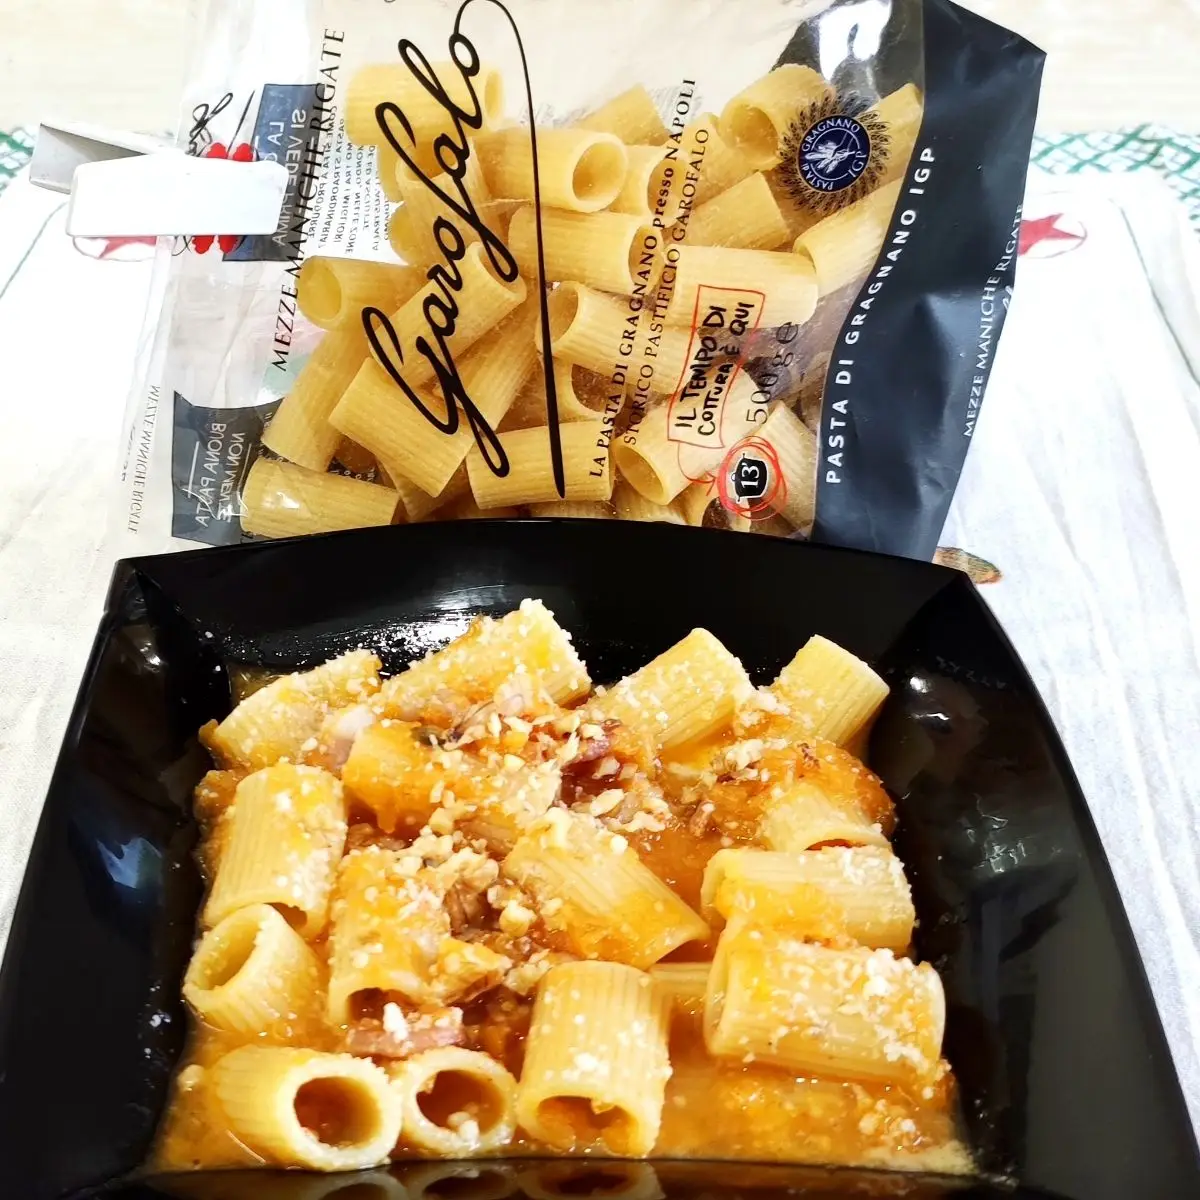 Ricetta Pasta Garofalo con crema di zucca, pancetta affumicata e granella di noci. di ilninotto